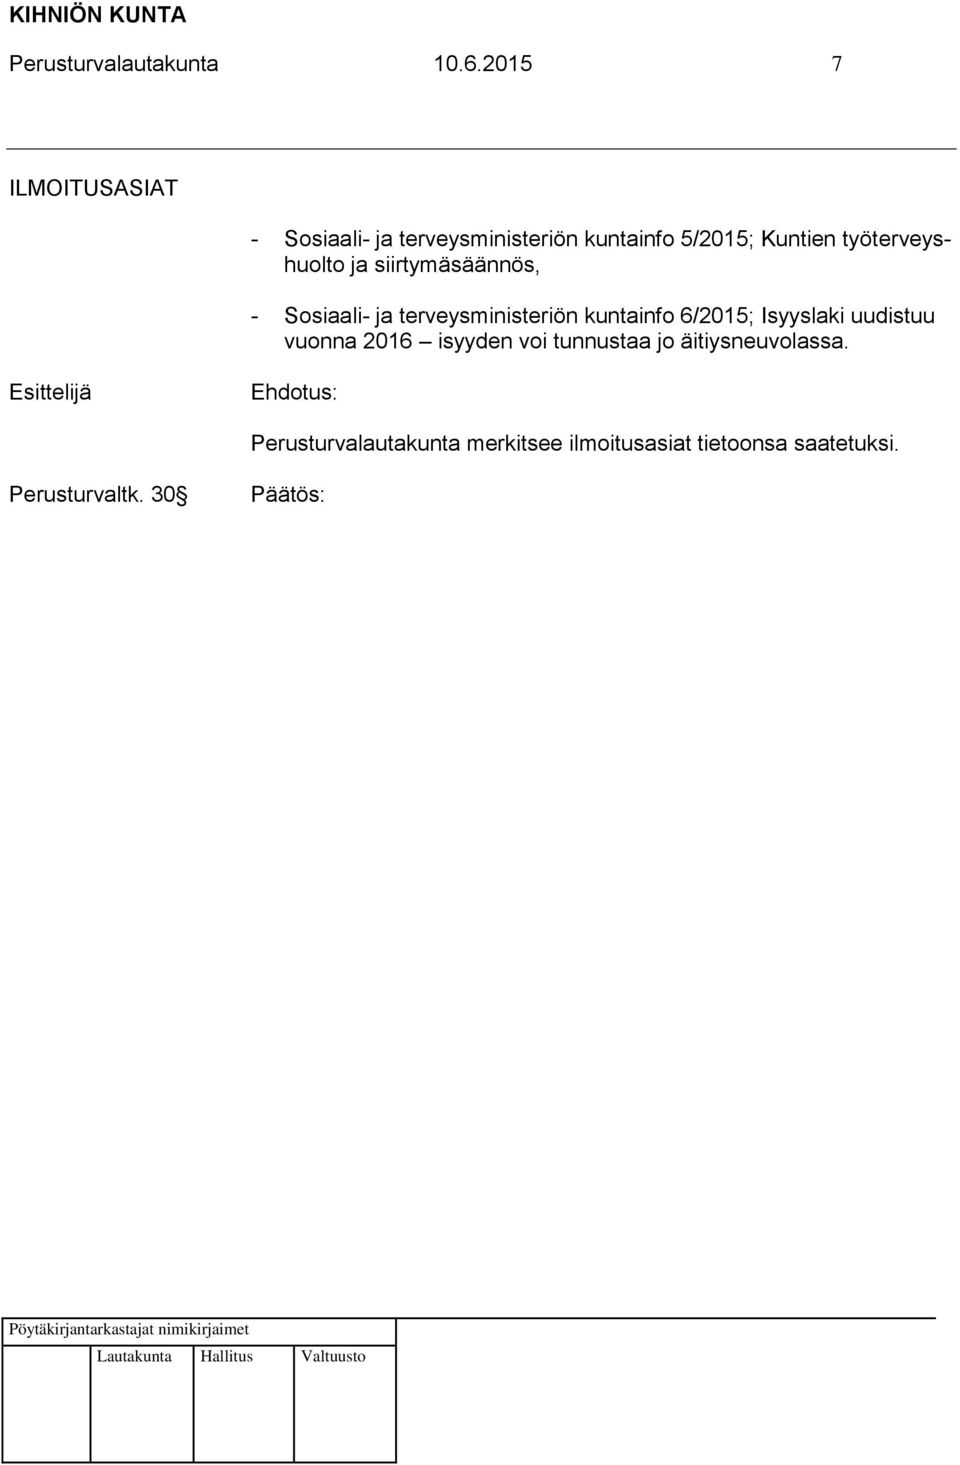 työterveyshuolto ja siirtymäsäännös, - Sosiaali- ja terveysministeriön kuntainfo 6/2015;